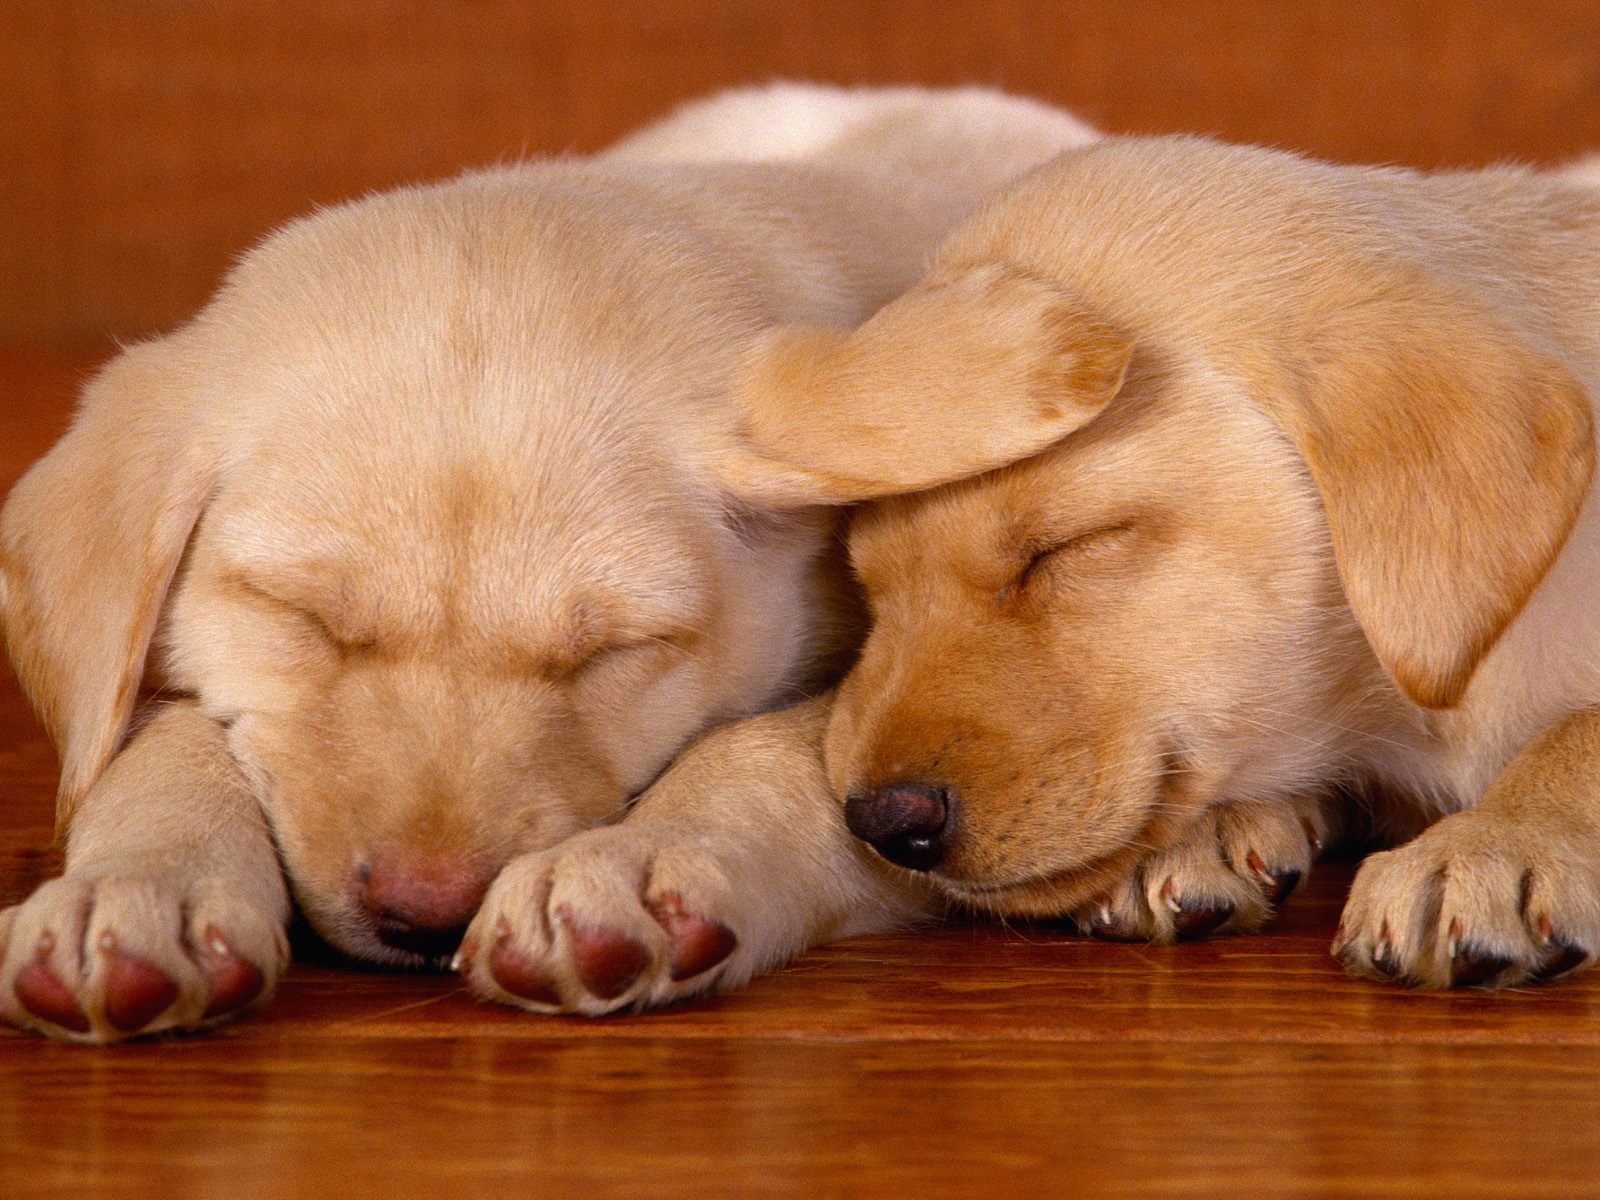 https://blogger.googleusercontent.com/img/b/R29vZ2xl/AVvXsEjZOhoit07uLtN6L4jYW4NGBd5S75MLKWgSYVii9CdRiJCigdB96q9oJqNeWwX0V8W3Vg3ZvkuUslzyyMDDQOzjF5XP6rFoKqoI8gKhWqccAE4cQZPfn0dz6lFQhUOAQGxposvz7_7zK4Yo/s1600/Sleeping+on+the+Job,+Lab+Puppies.jpg